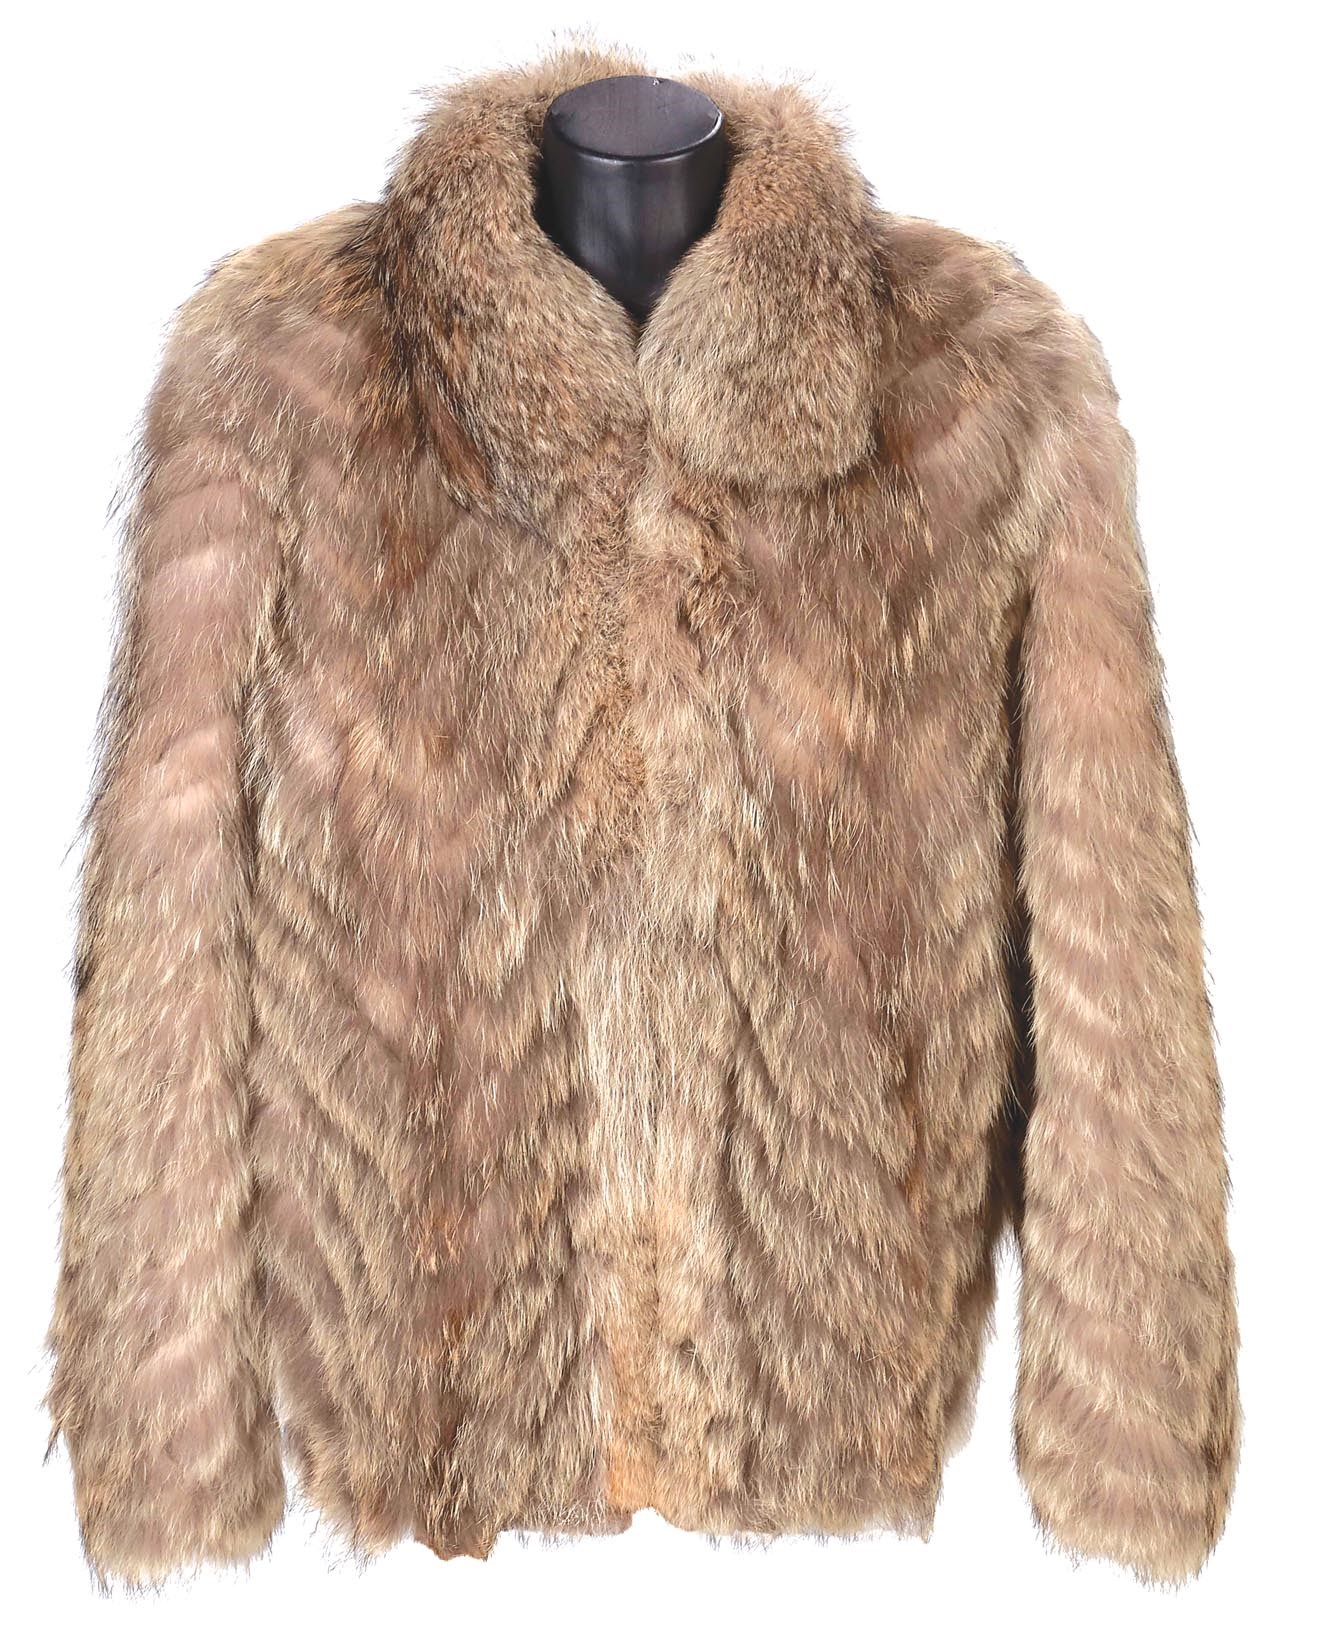 - Joe Namath's Classic Fur Coat